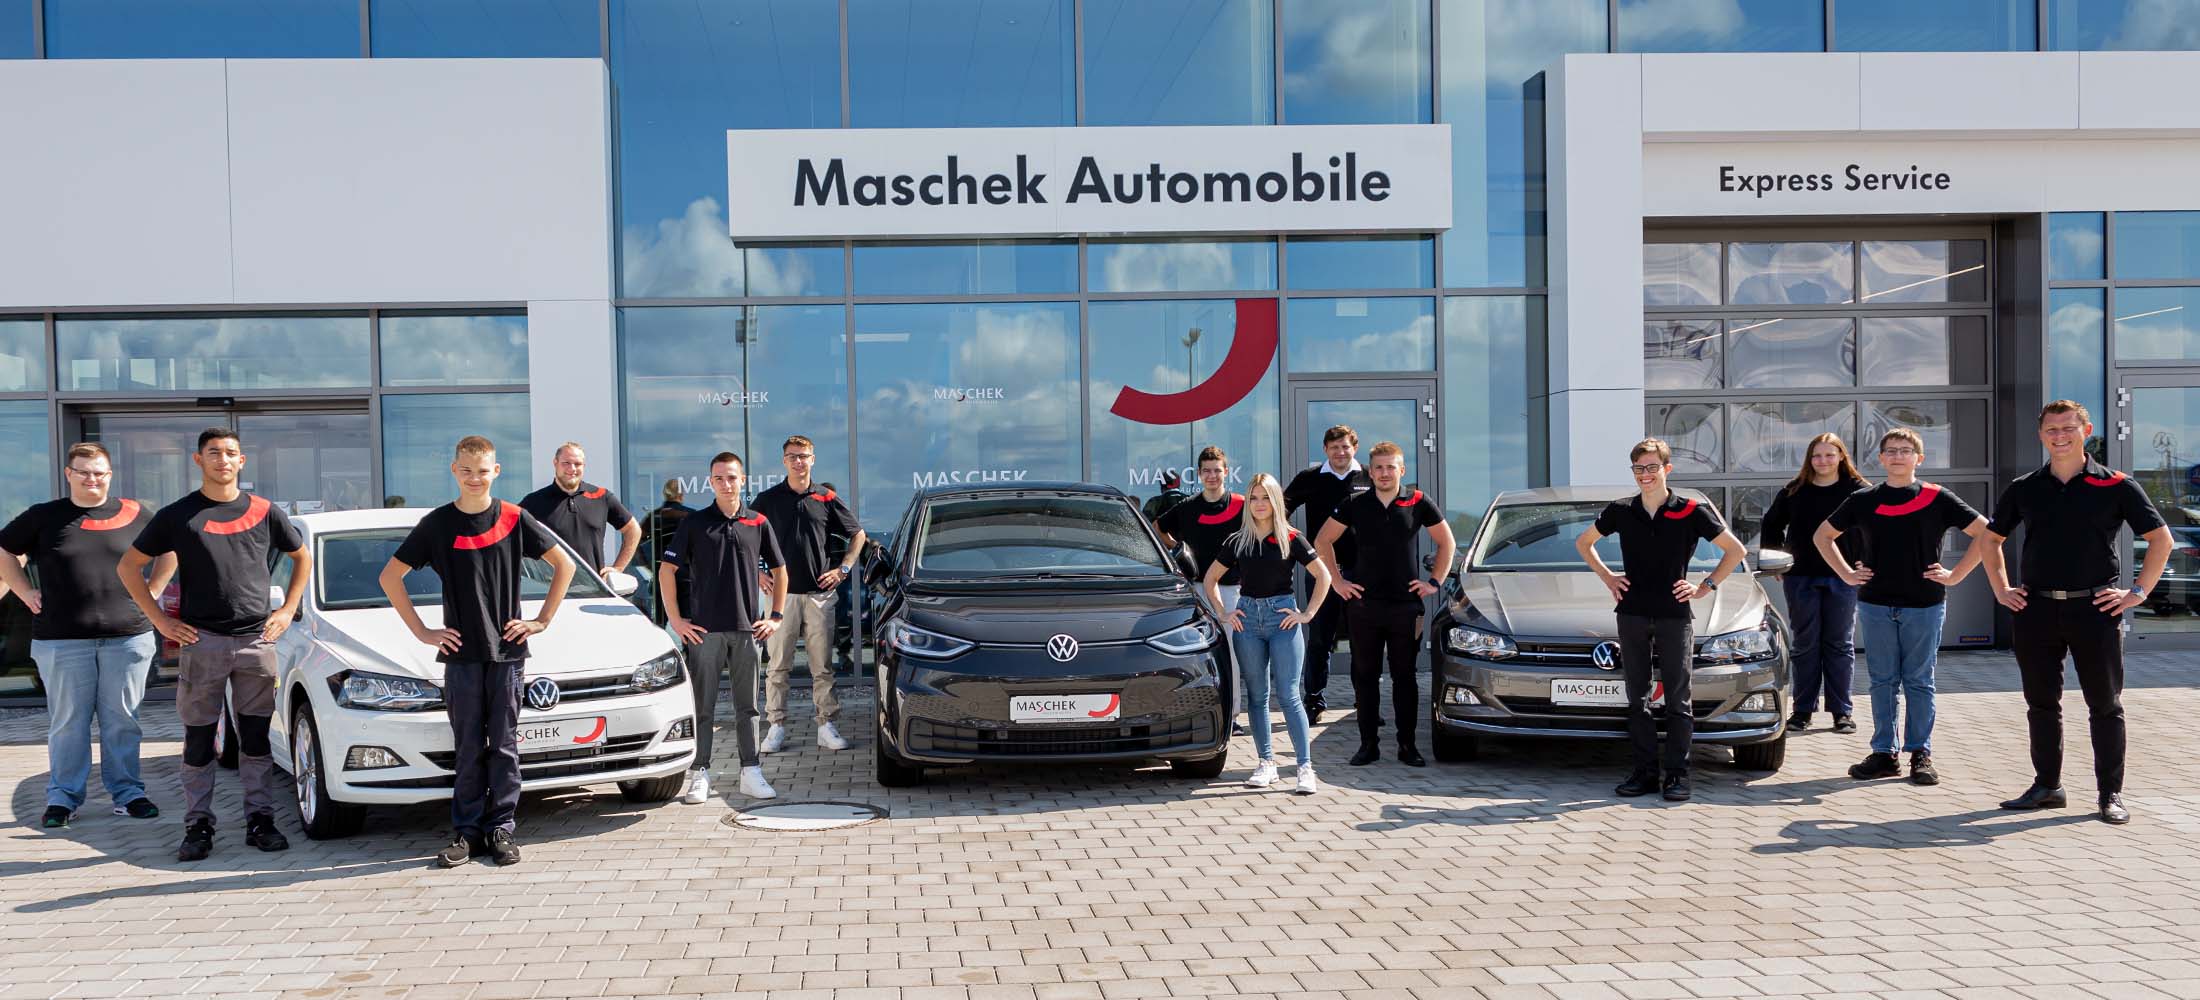 Starten Sie Ihre Karriere bei Maschek Automobile GmbH & Co. KG in Schwandorf und Wackersdorf